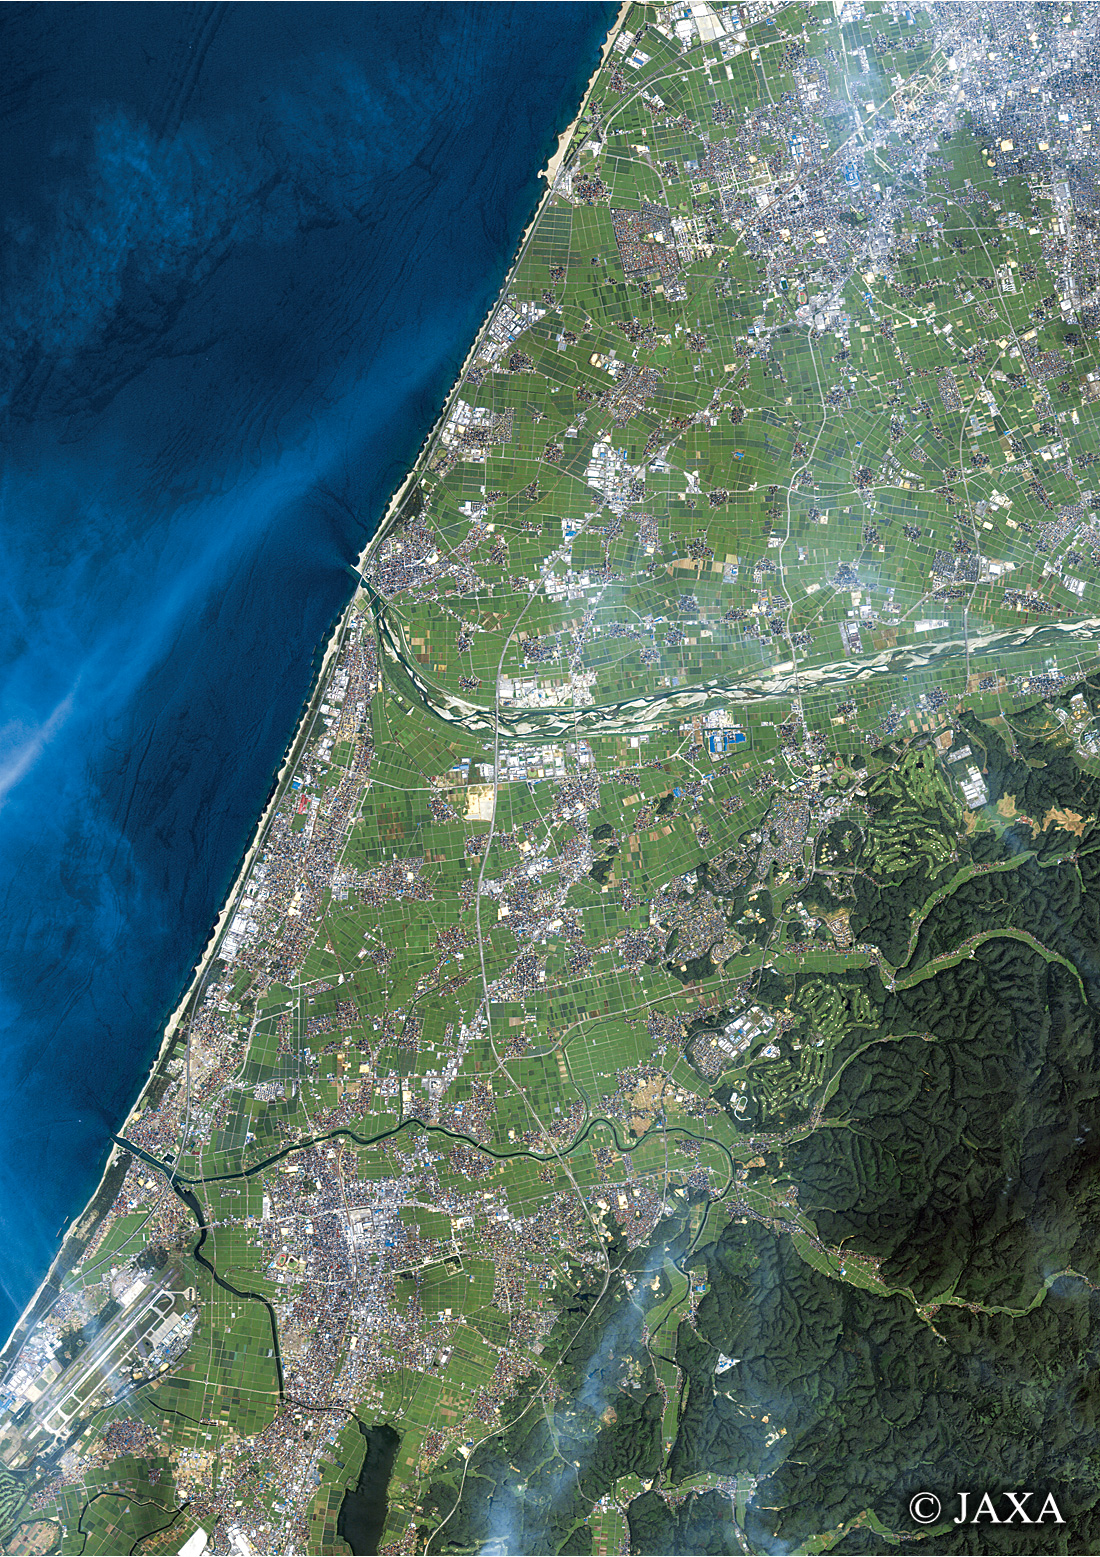 だいちから見た日本の都市 石川県海岸浸食:衛星画像